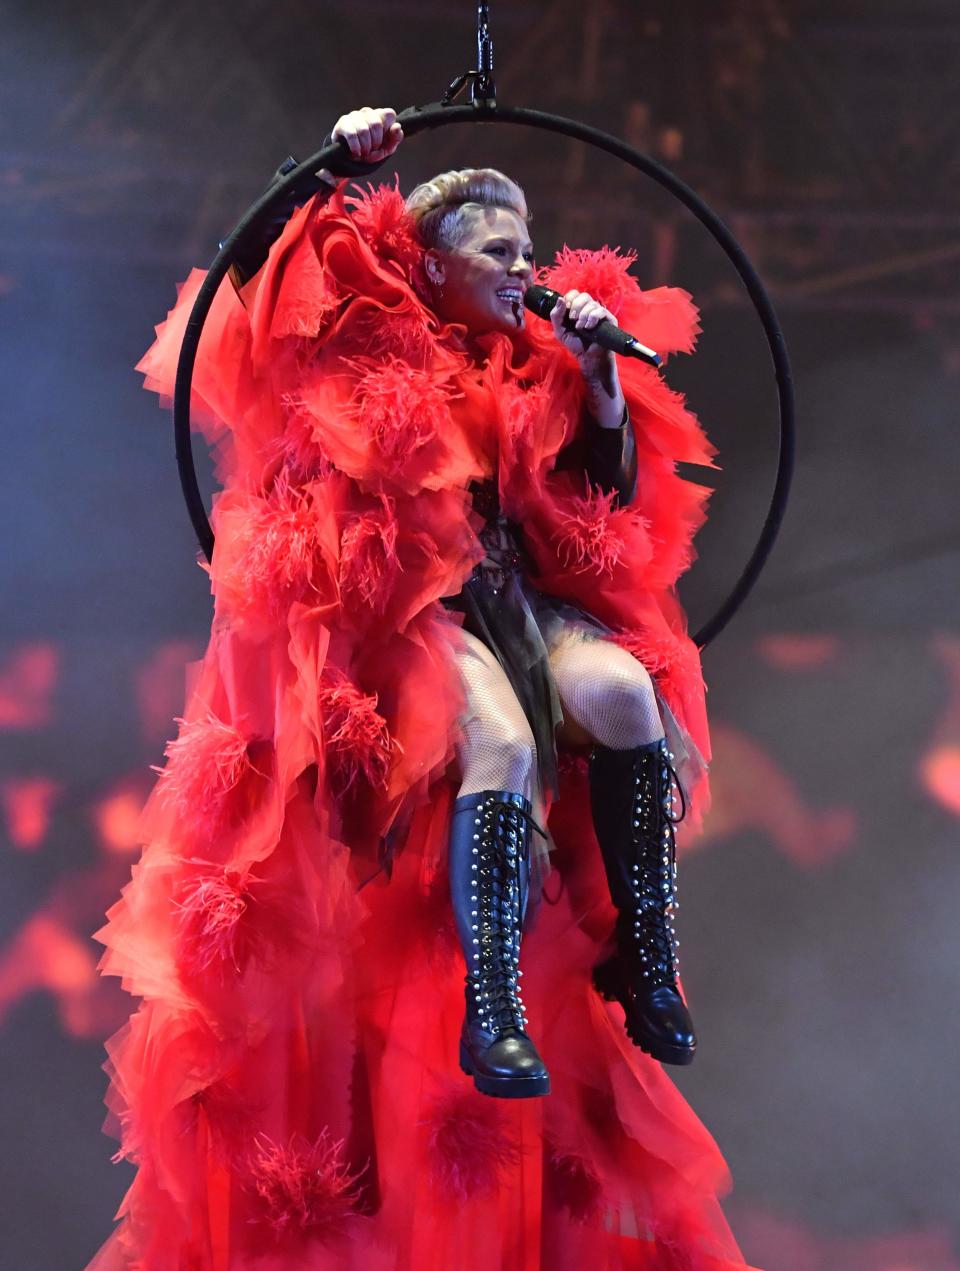 Pink landete für ihren Auftritt in einem Reifen und gekleidet in einen roten Umhang auf der Bühne. (Bild:Gareth Cattermole/Getty Images)